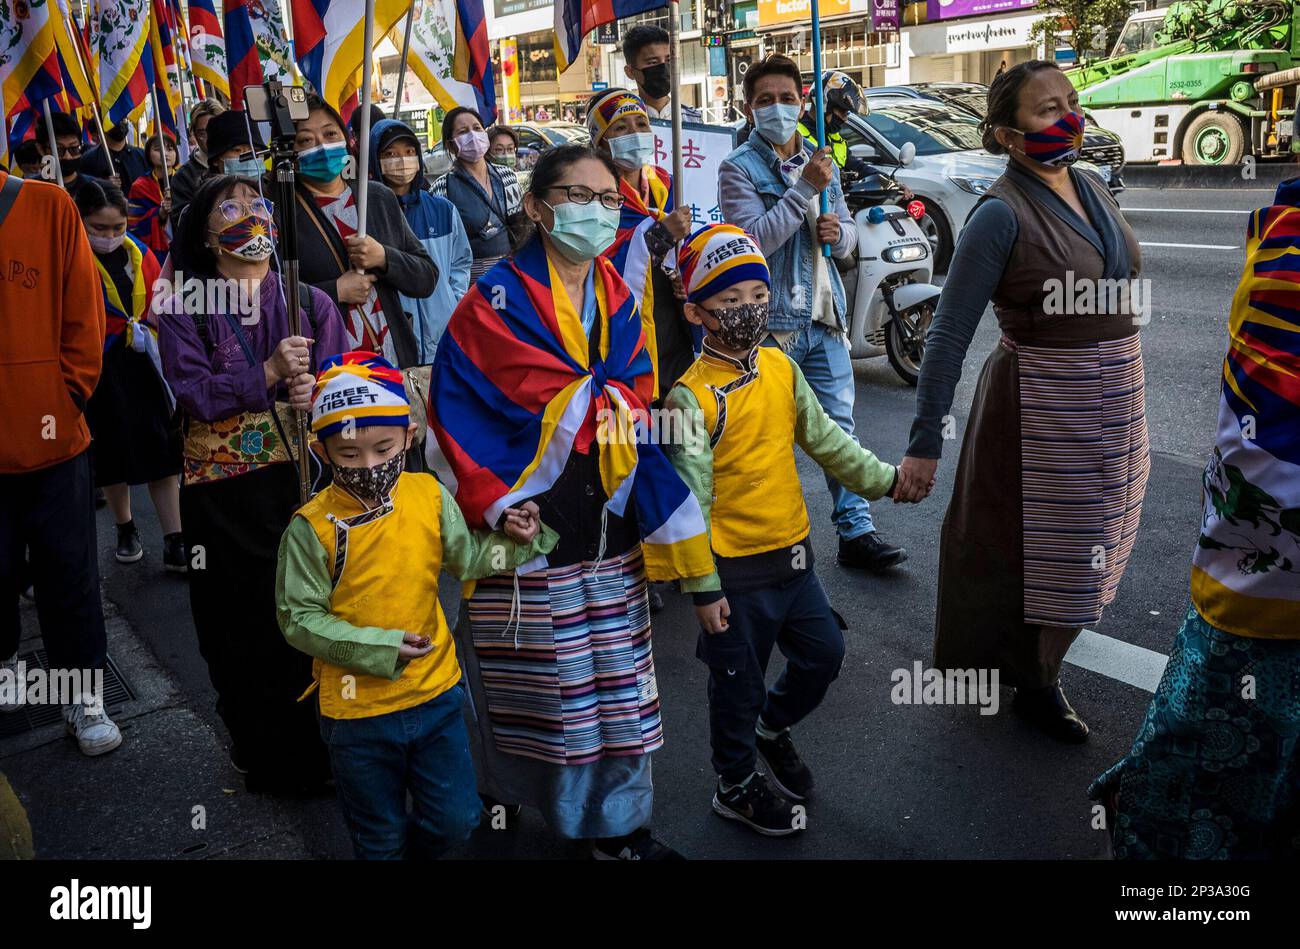 Taipeh. 05. März 2023. Tibeter und Taiwanesen, die die tibetische Freiheit unterstützen, protestieren am 05./03/2023. Anlässlich des 64. Jahrestages des Aufstands in Tibet auf den Straßen Taipeh, Taiwan. Die Demonstranten fordern, dass die chinesischen Behörden aufhören, Menschen in Tibet zu unterdrücken, und dass der Dalai Lama nach Lhasa zurückkehrt. Von Wiktor Dabkowski Credit: dpa/Alamy Live News Stockfoto